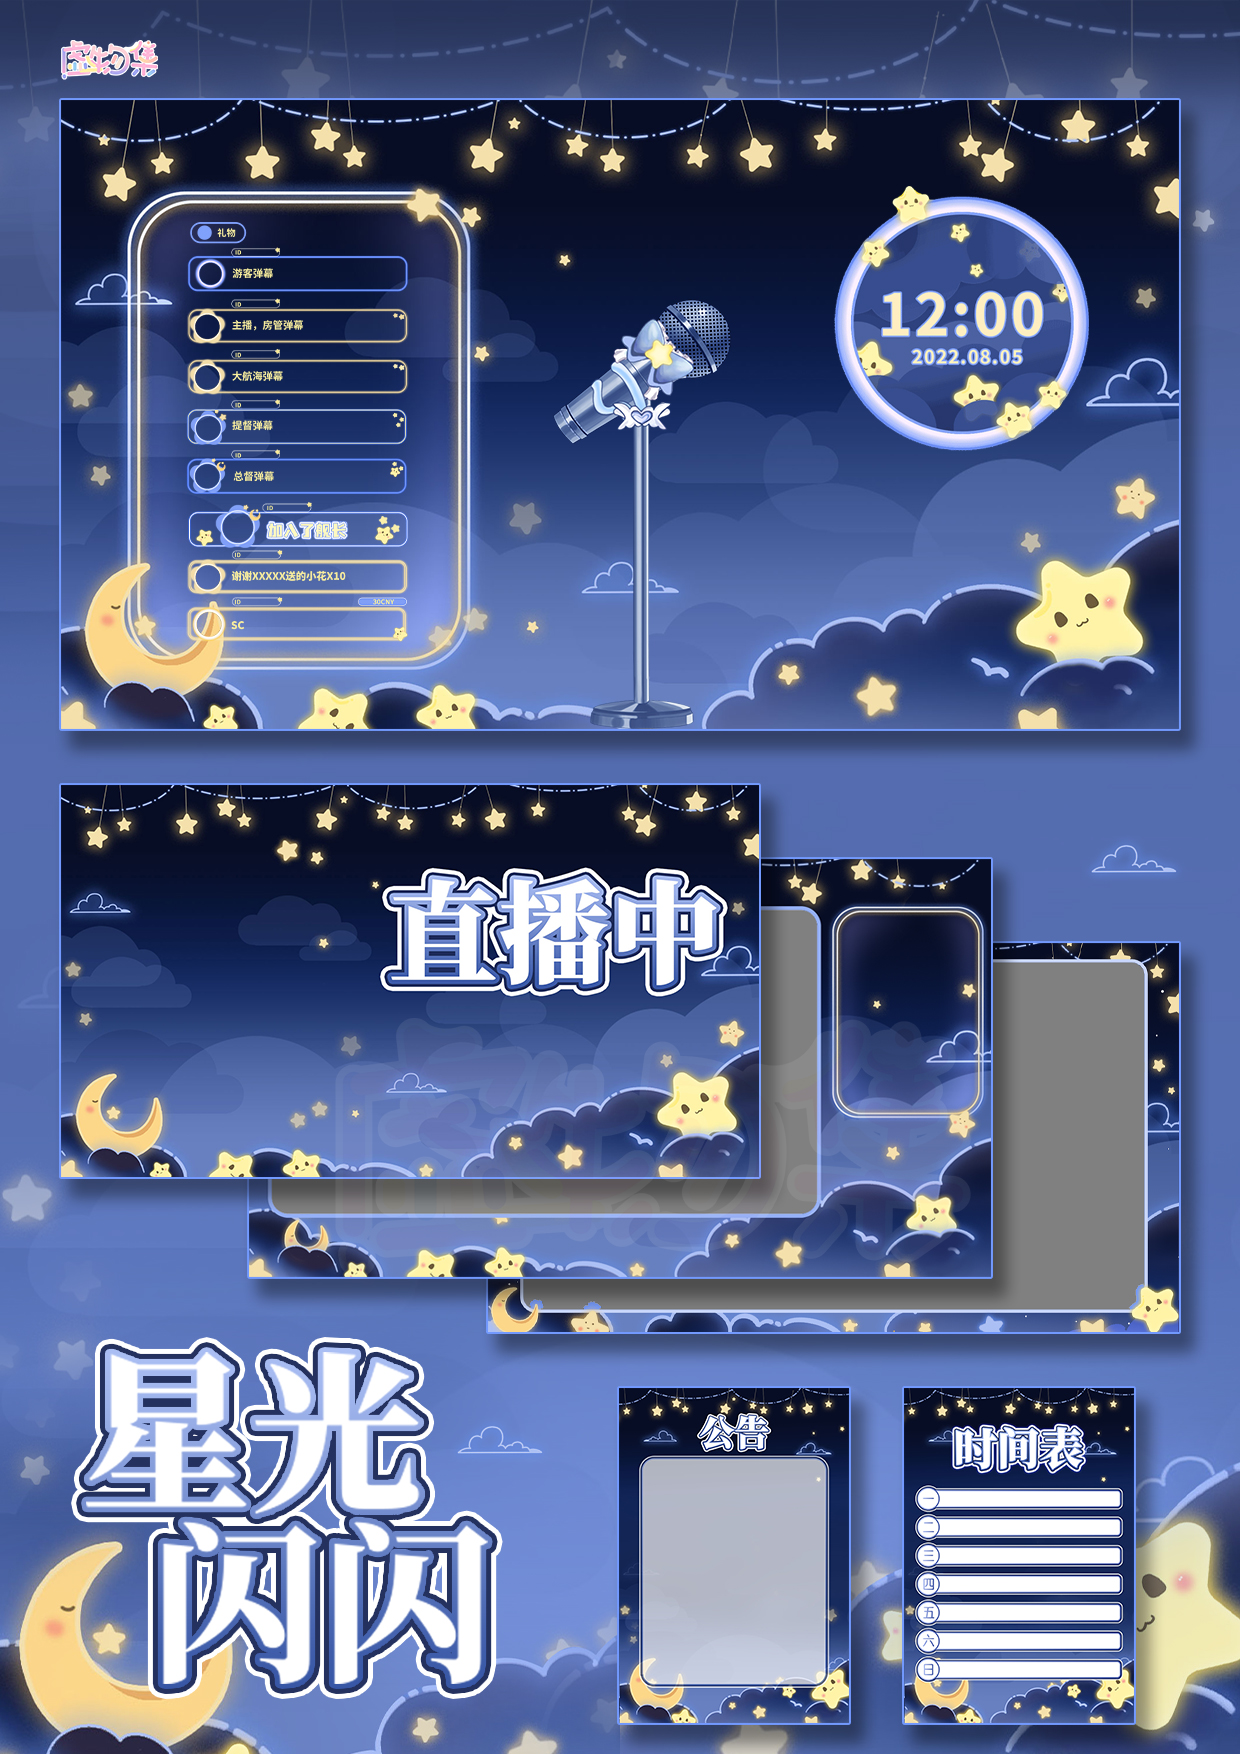 【虚物集】X009星光闪闪VUP虚拟主播房间背景图夜间直播间界面UI